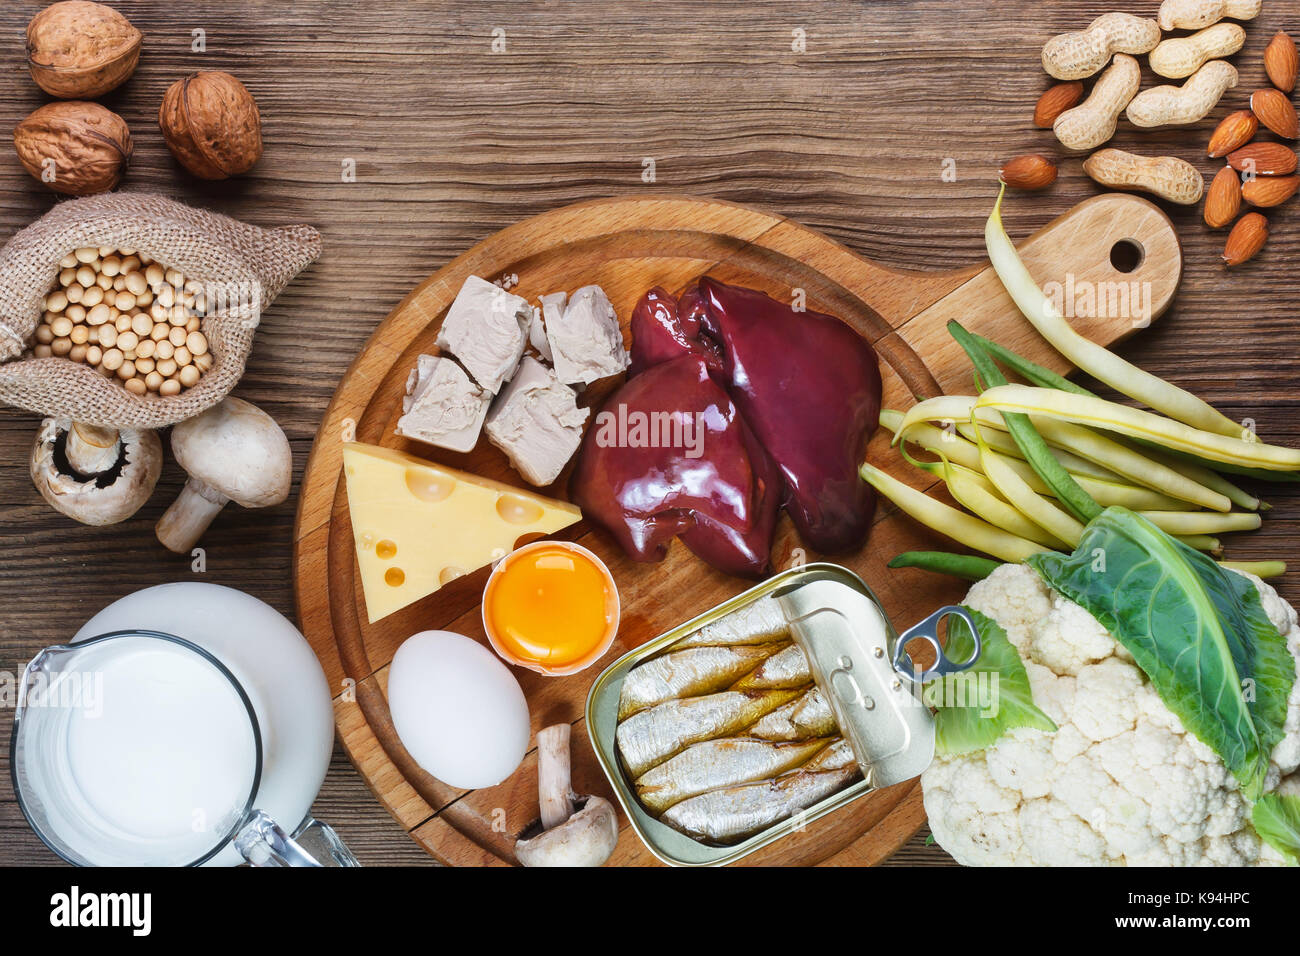 Les aliments riches en biotine (vitamine B7). aliments comme le foie, le jaune d'oeufs, la levure, le fromage, les sardines, le soja, le lait, le chou-fleur, les haricots verts, champignons, arachides, w Banque D'Images